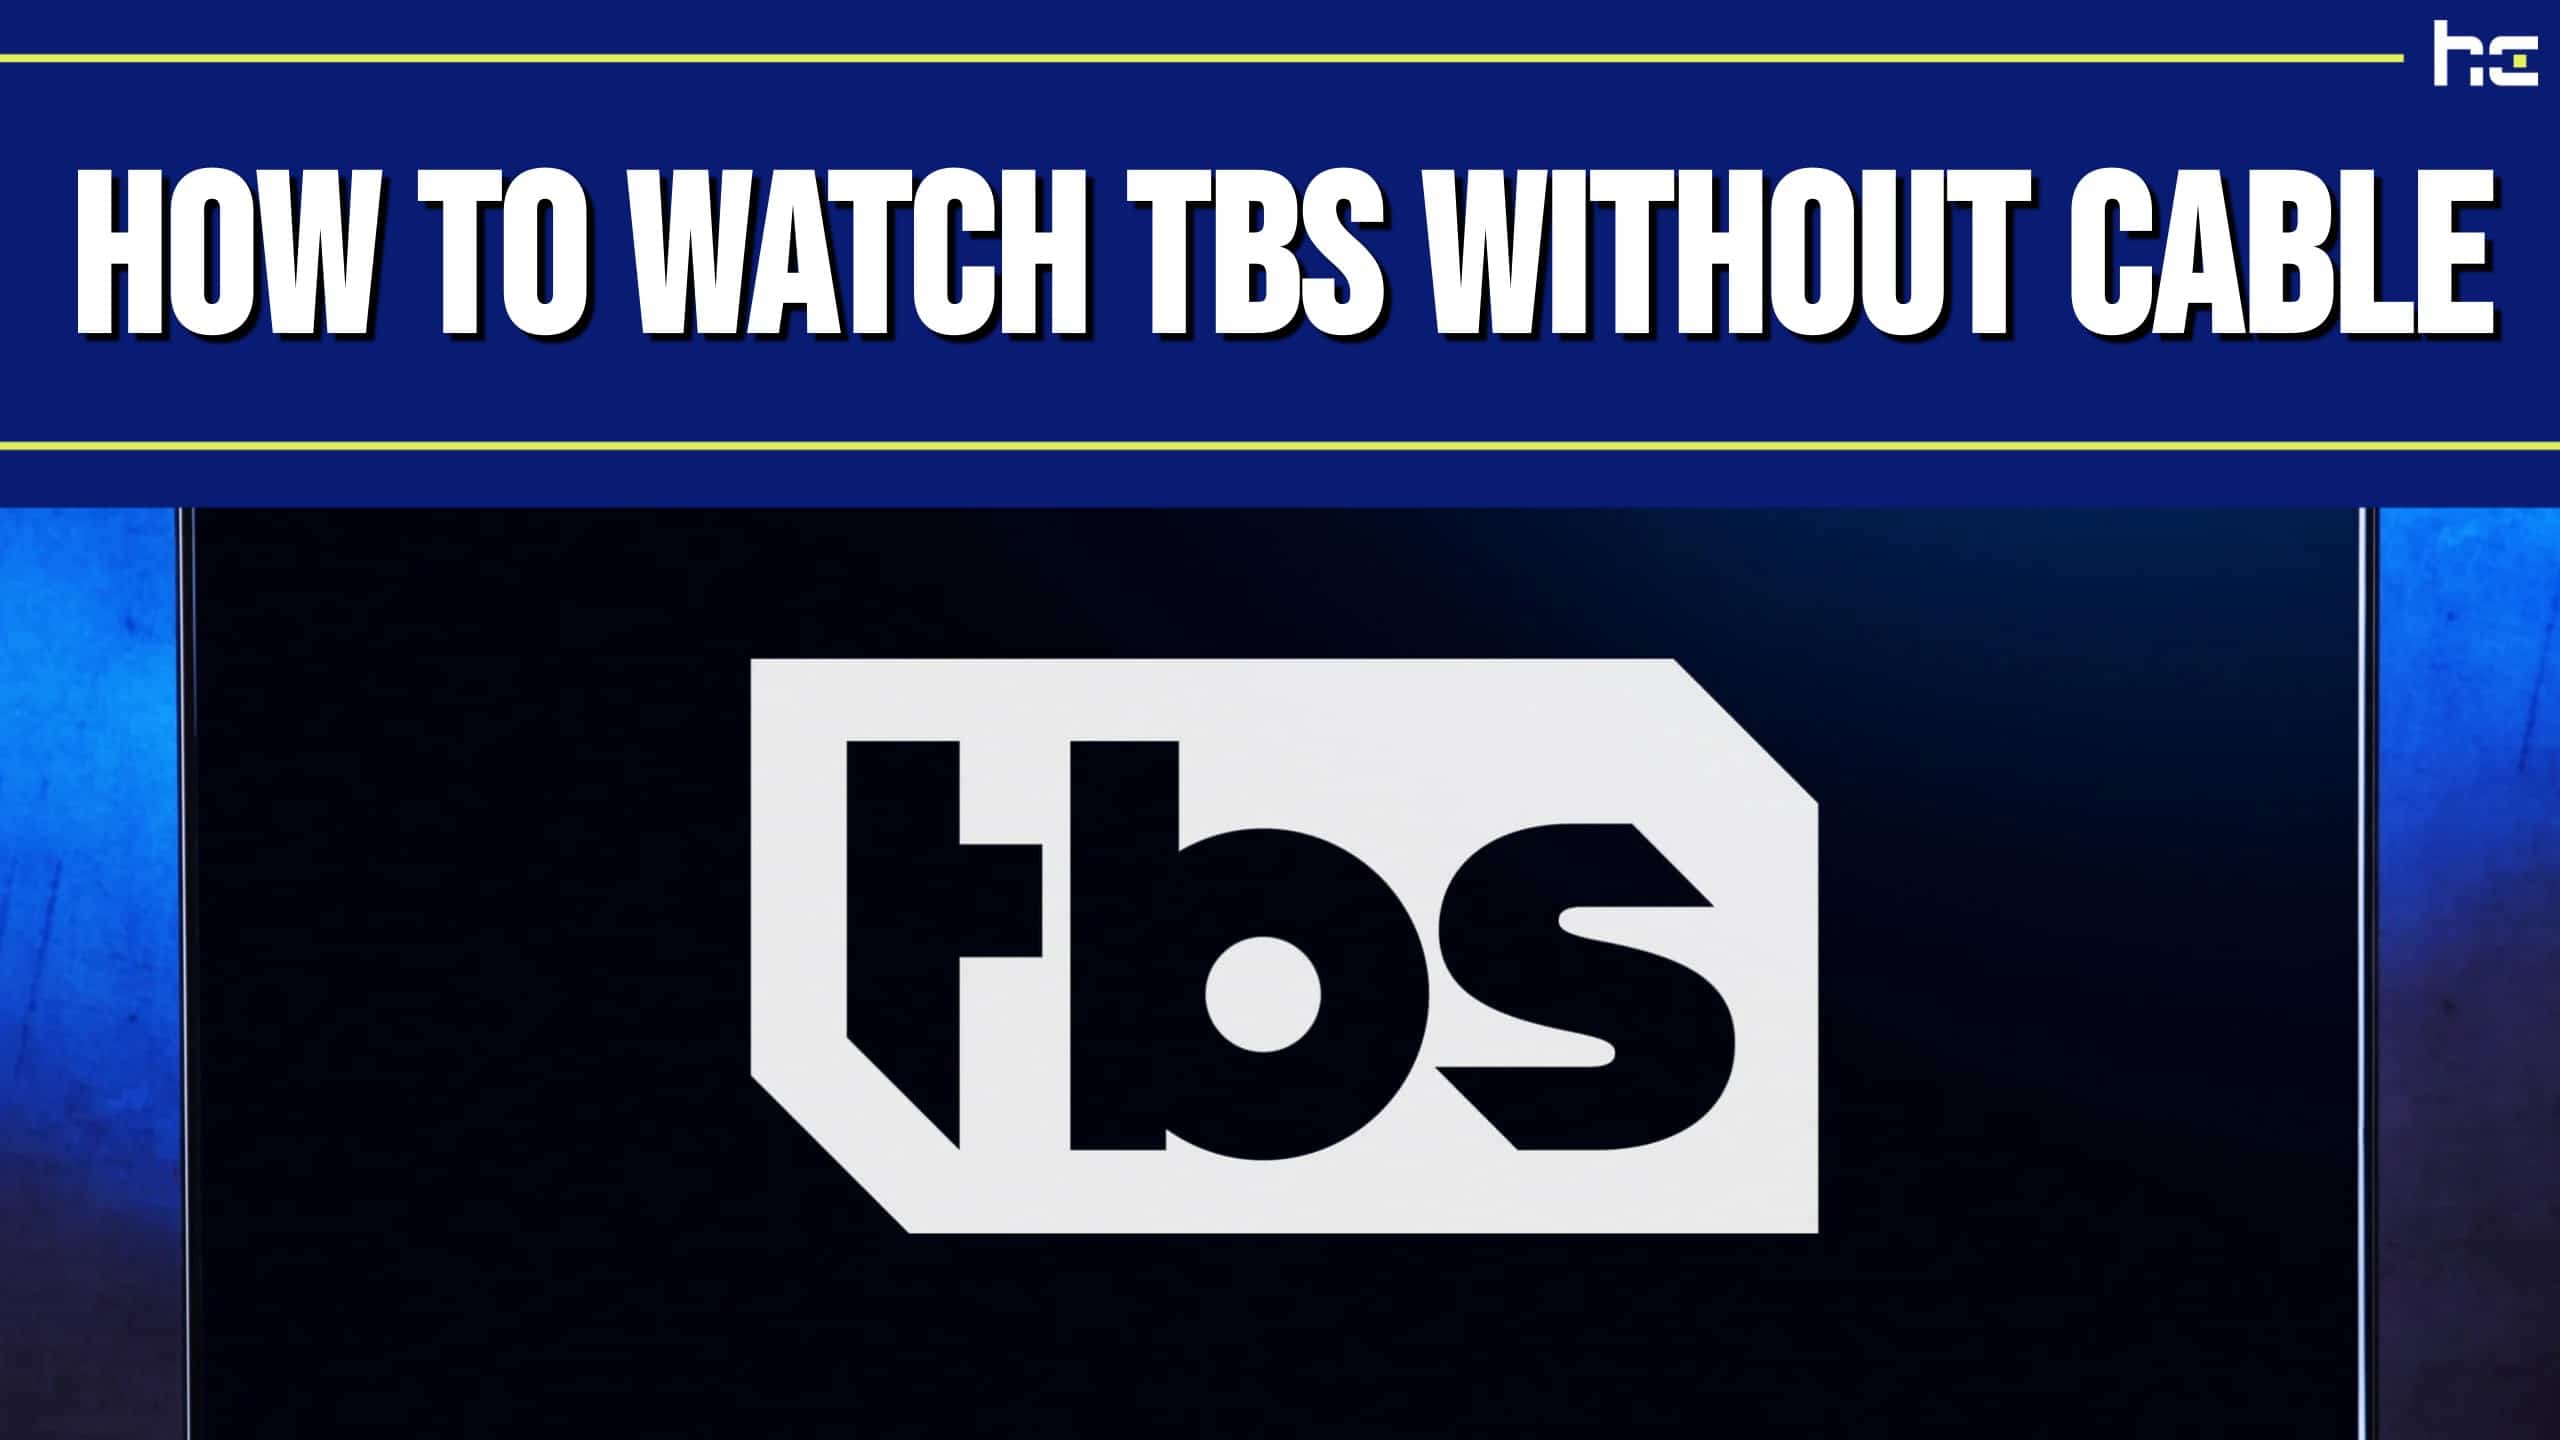 TBS logo.